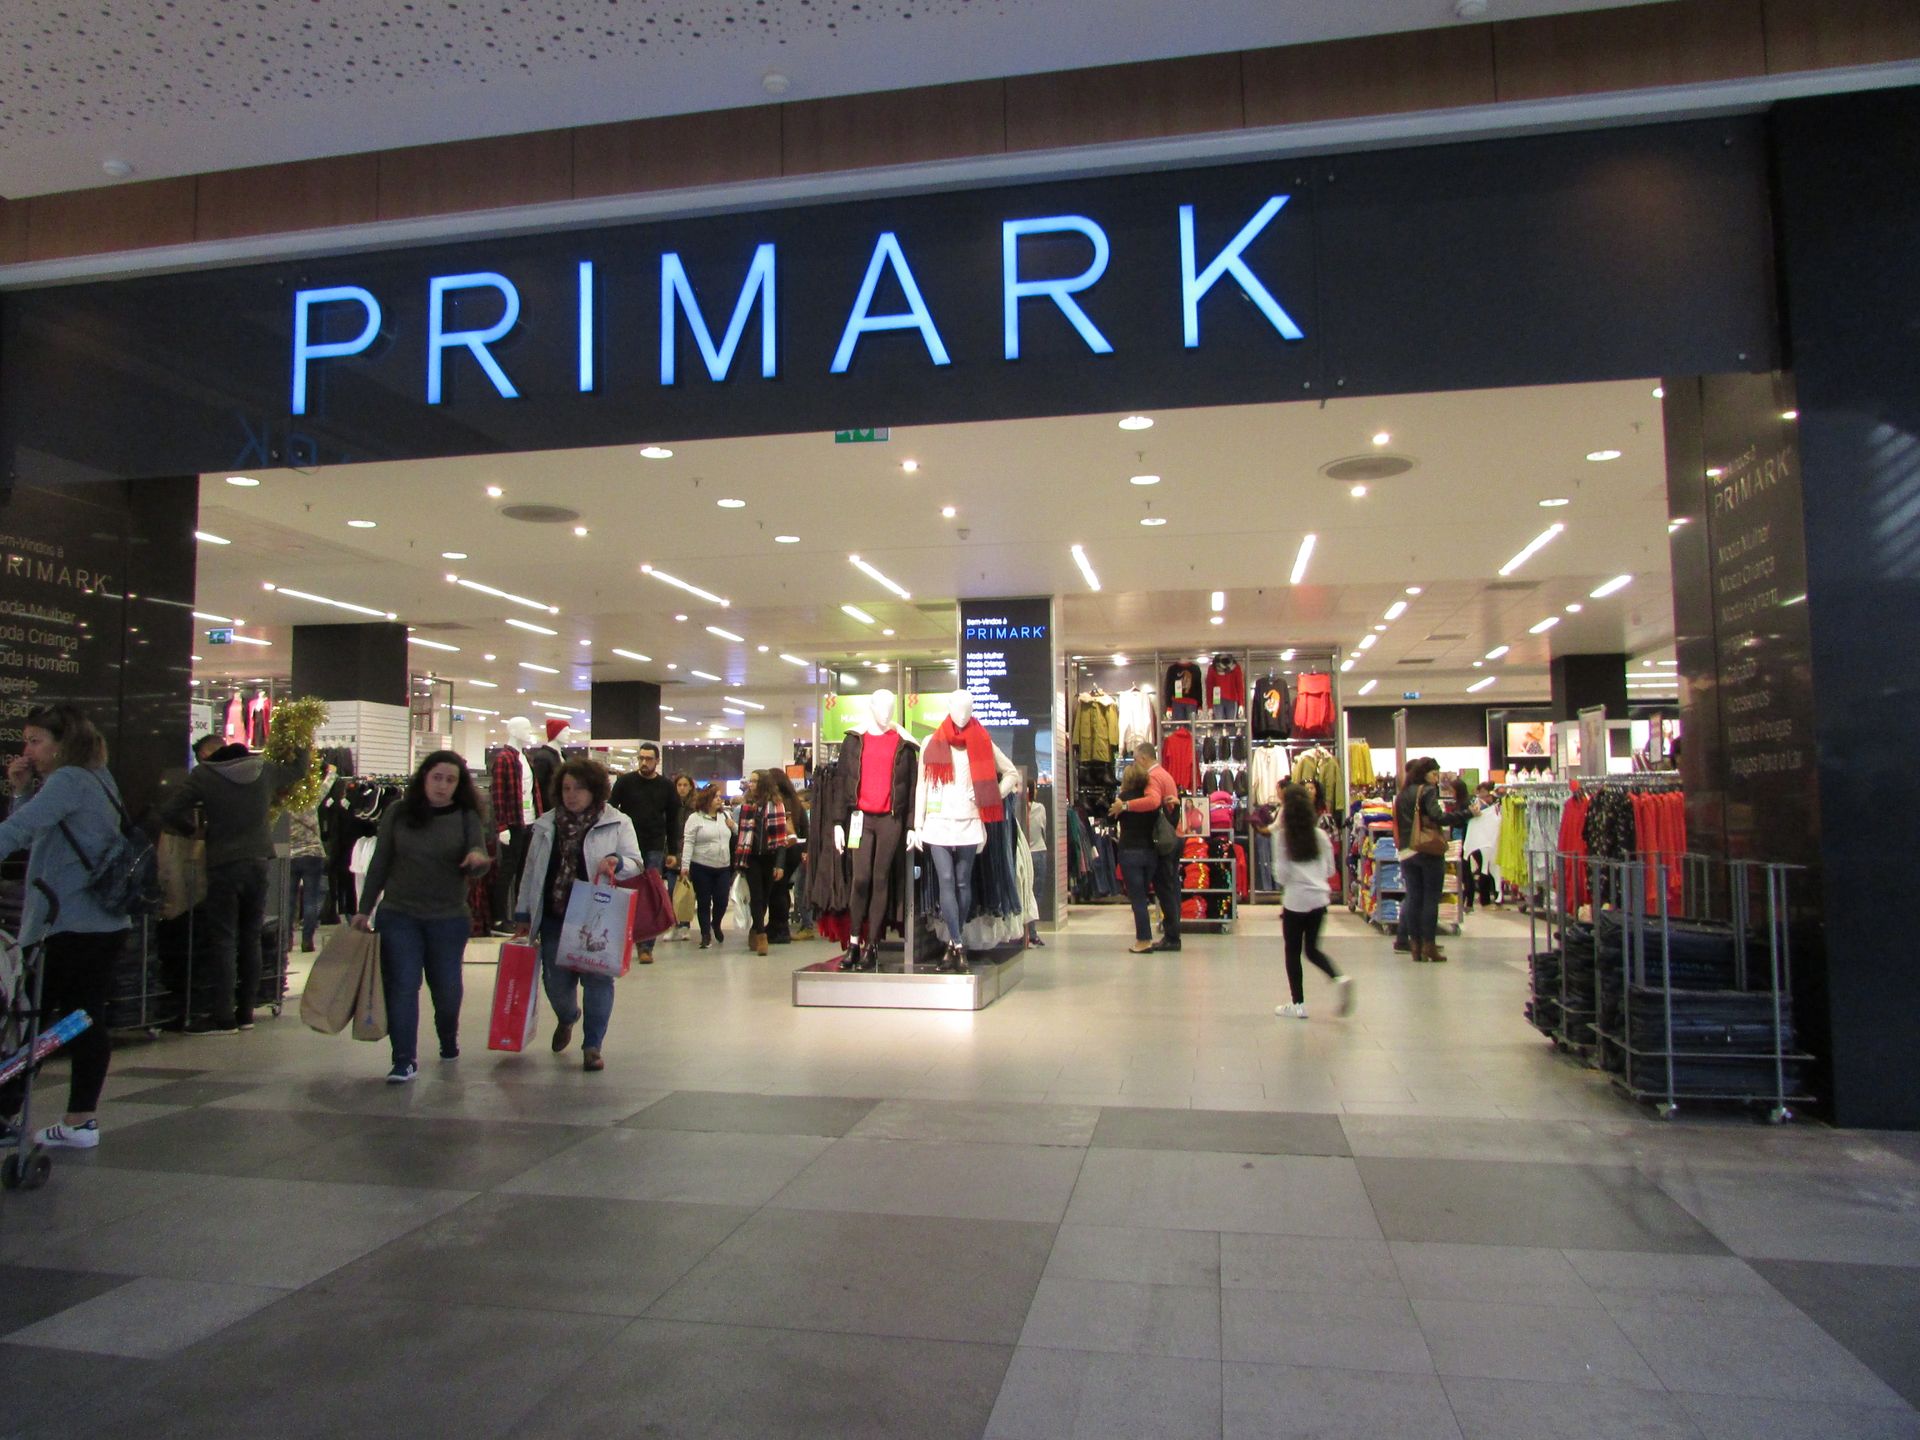 Primark otworzy sklep w Katowicach